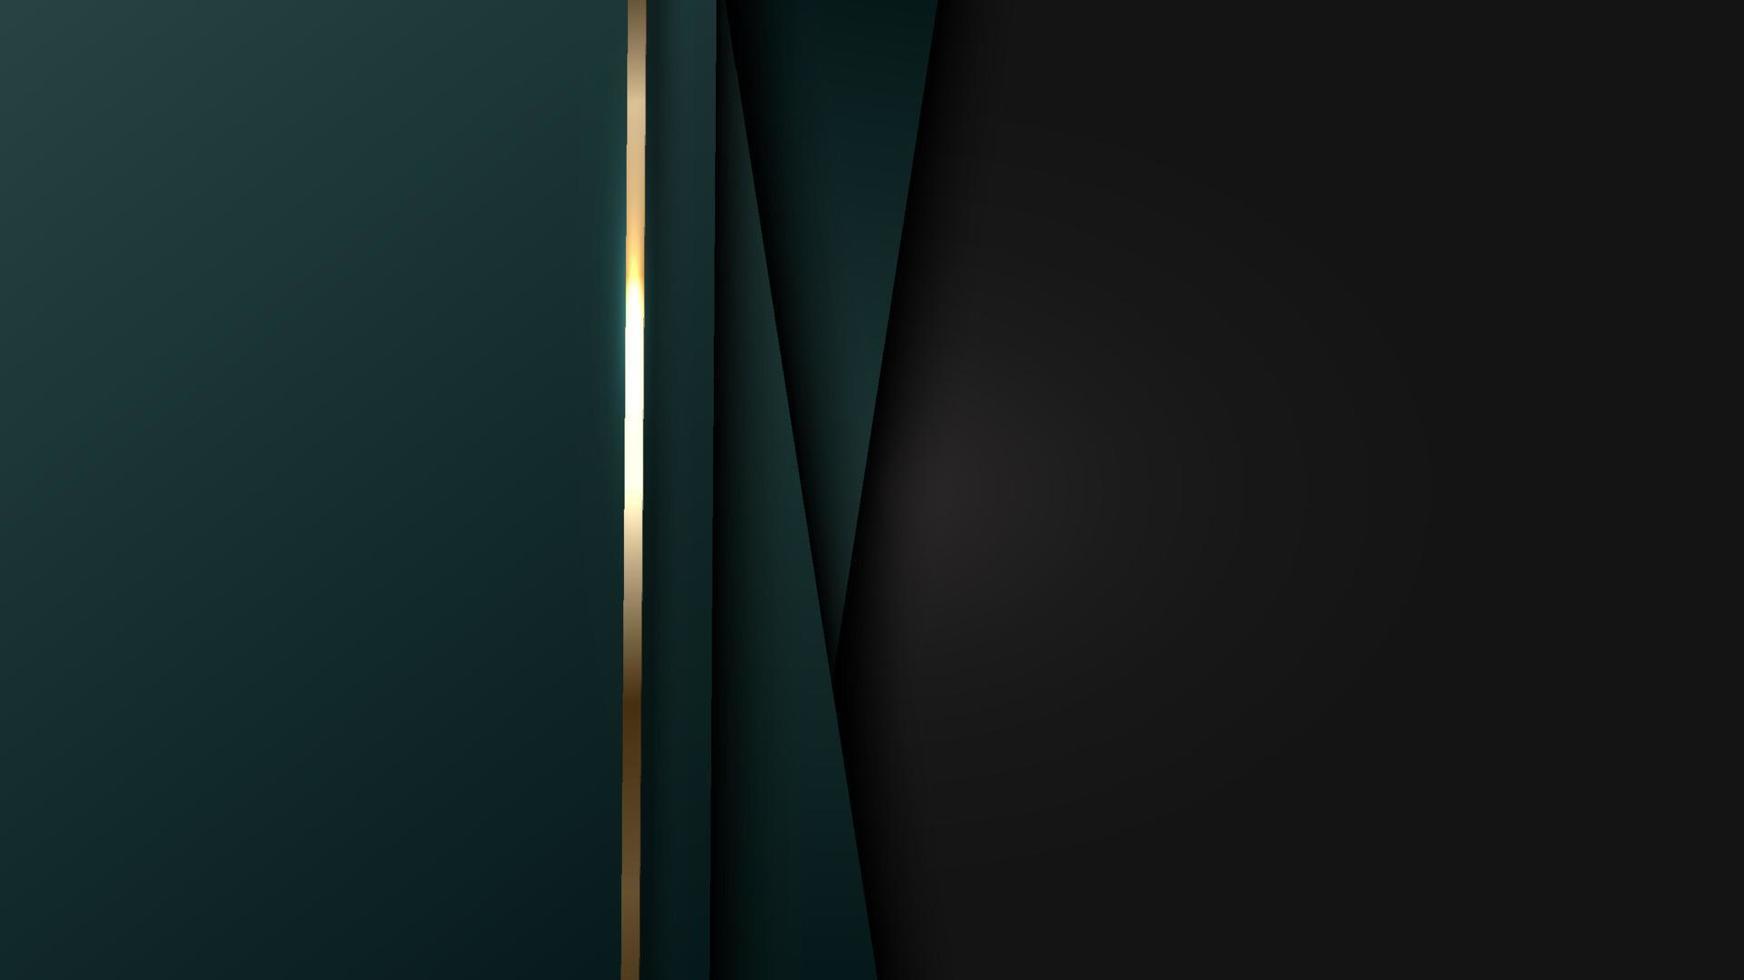 3d elegantes listras verdes de fundo abstrato sobreposição de camada com linhas douradas brilhantes em fundo preto vetor